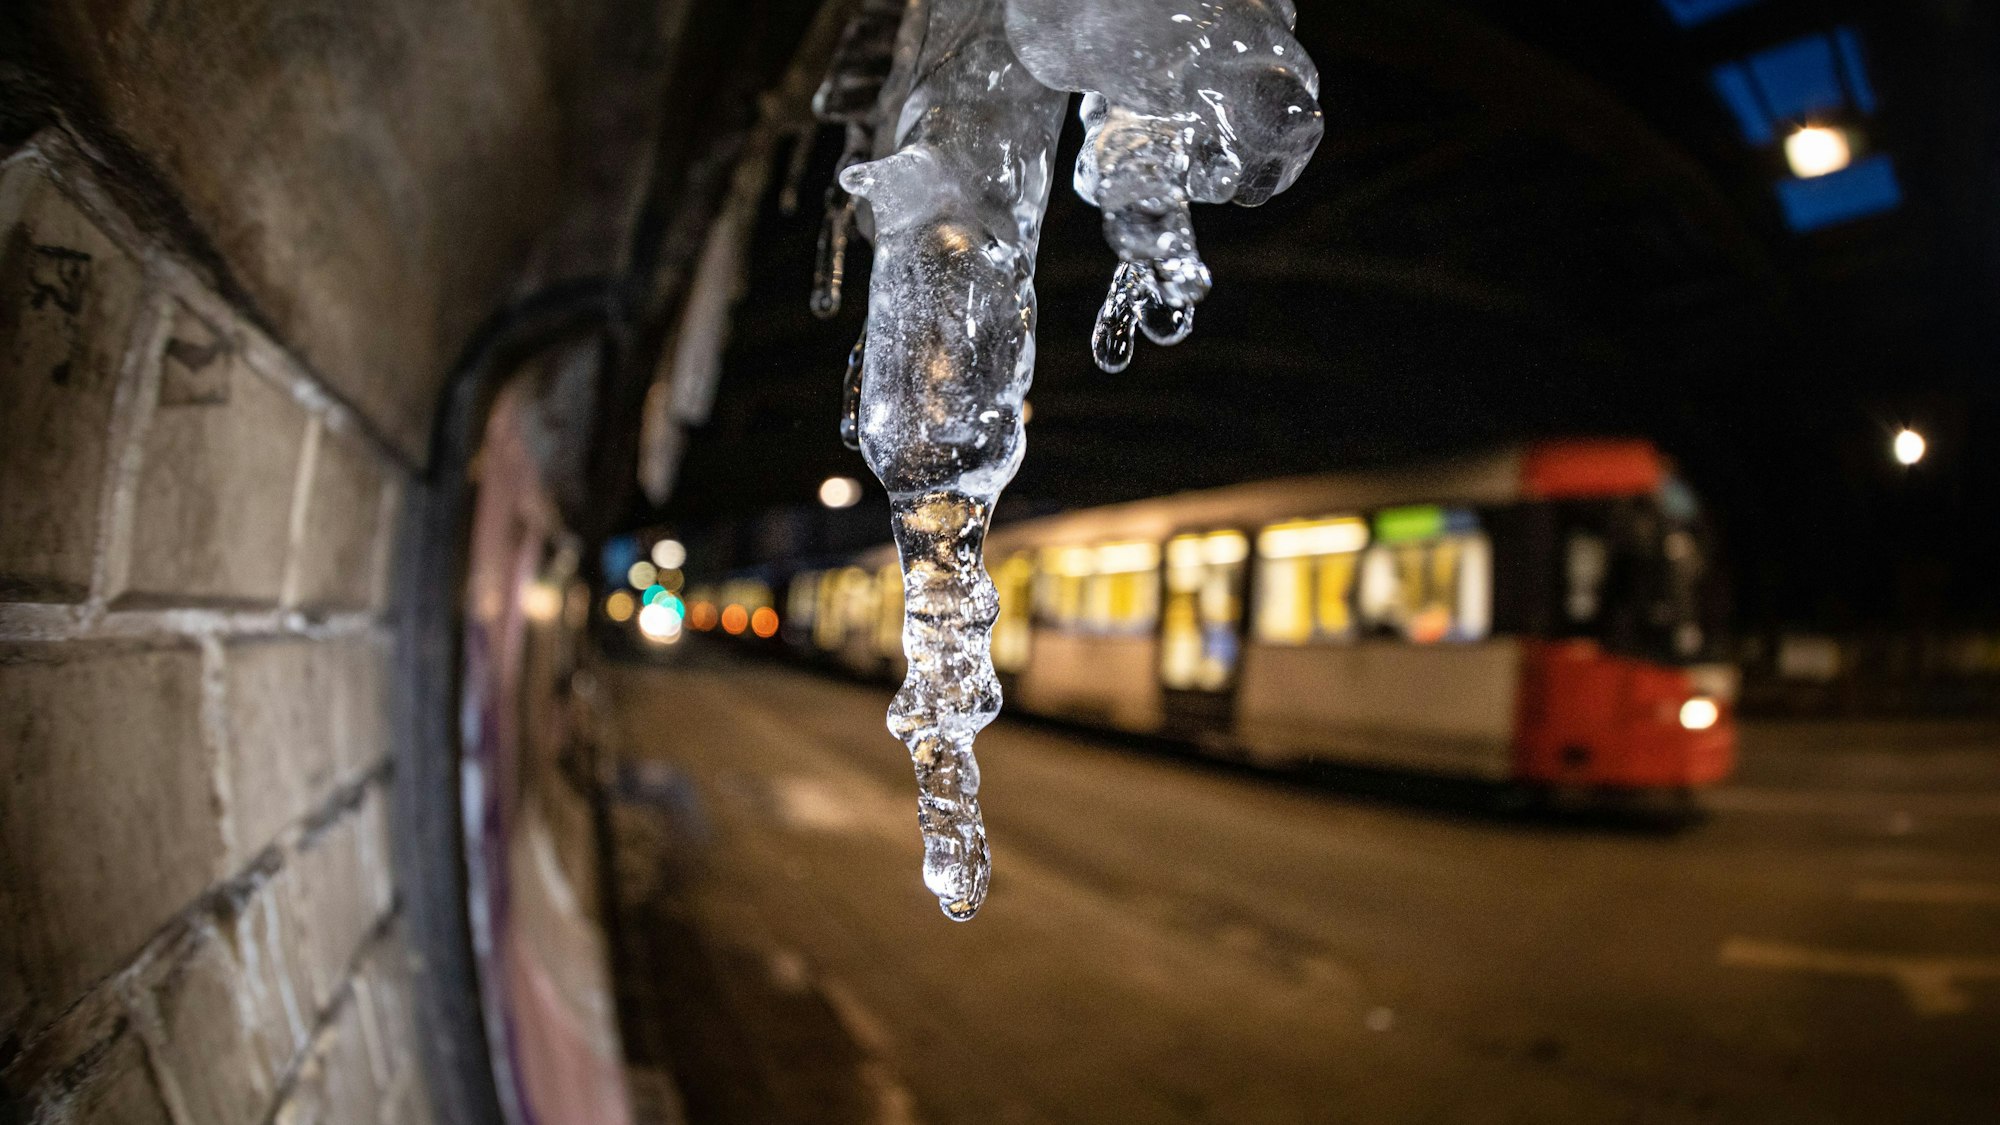 Eiszapfen hängen in der Eisenbahnunterführung an der Luxemburger Straße in Köln.